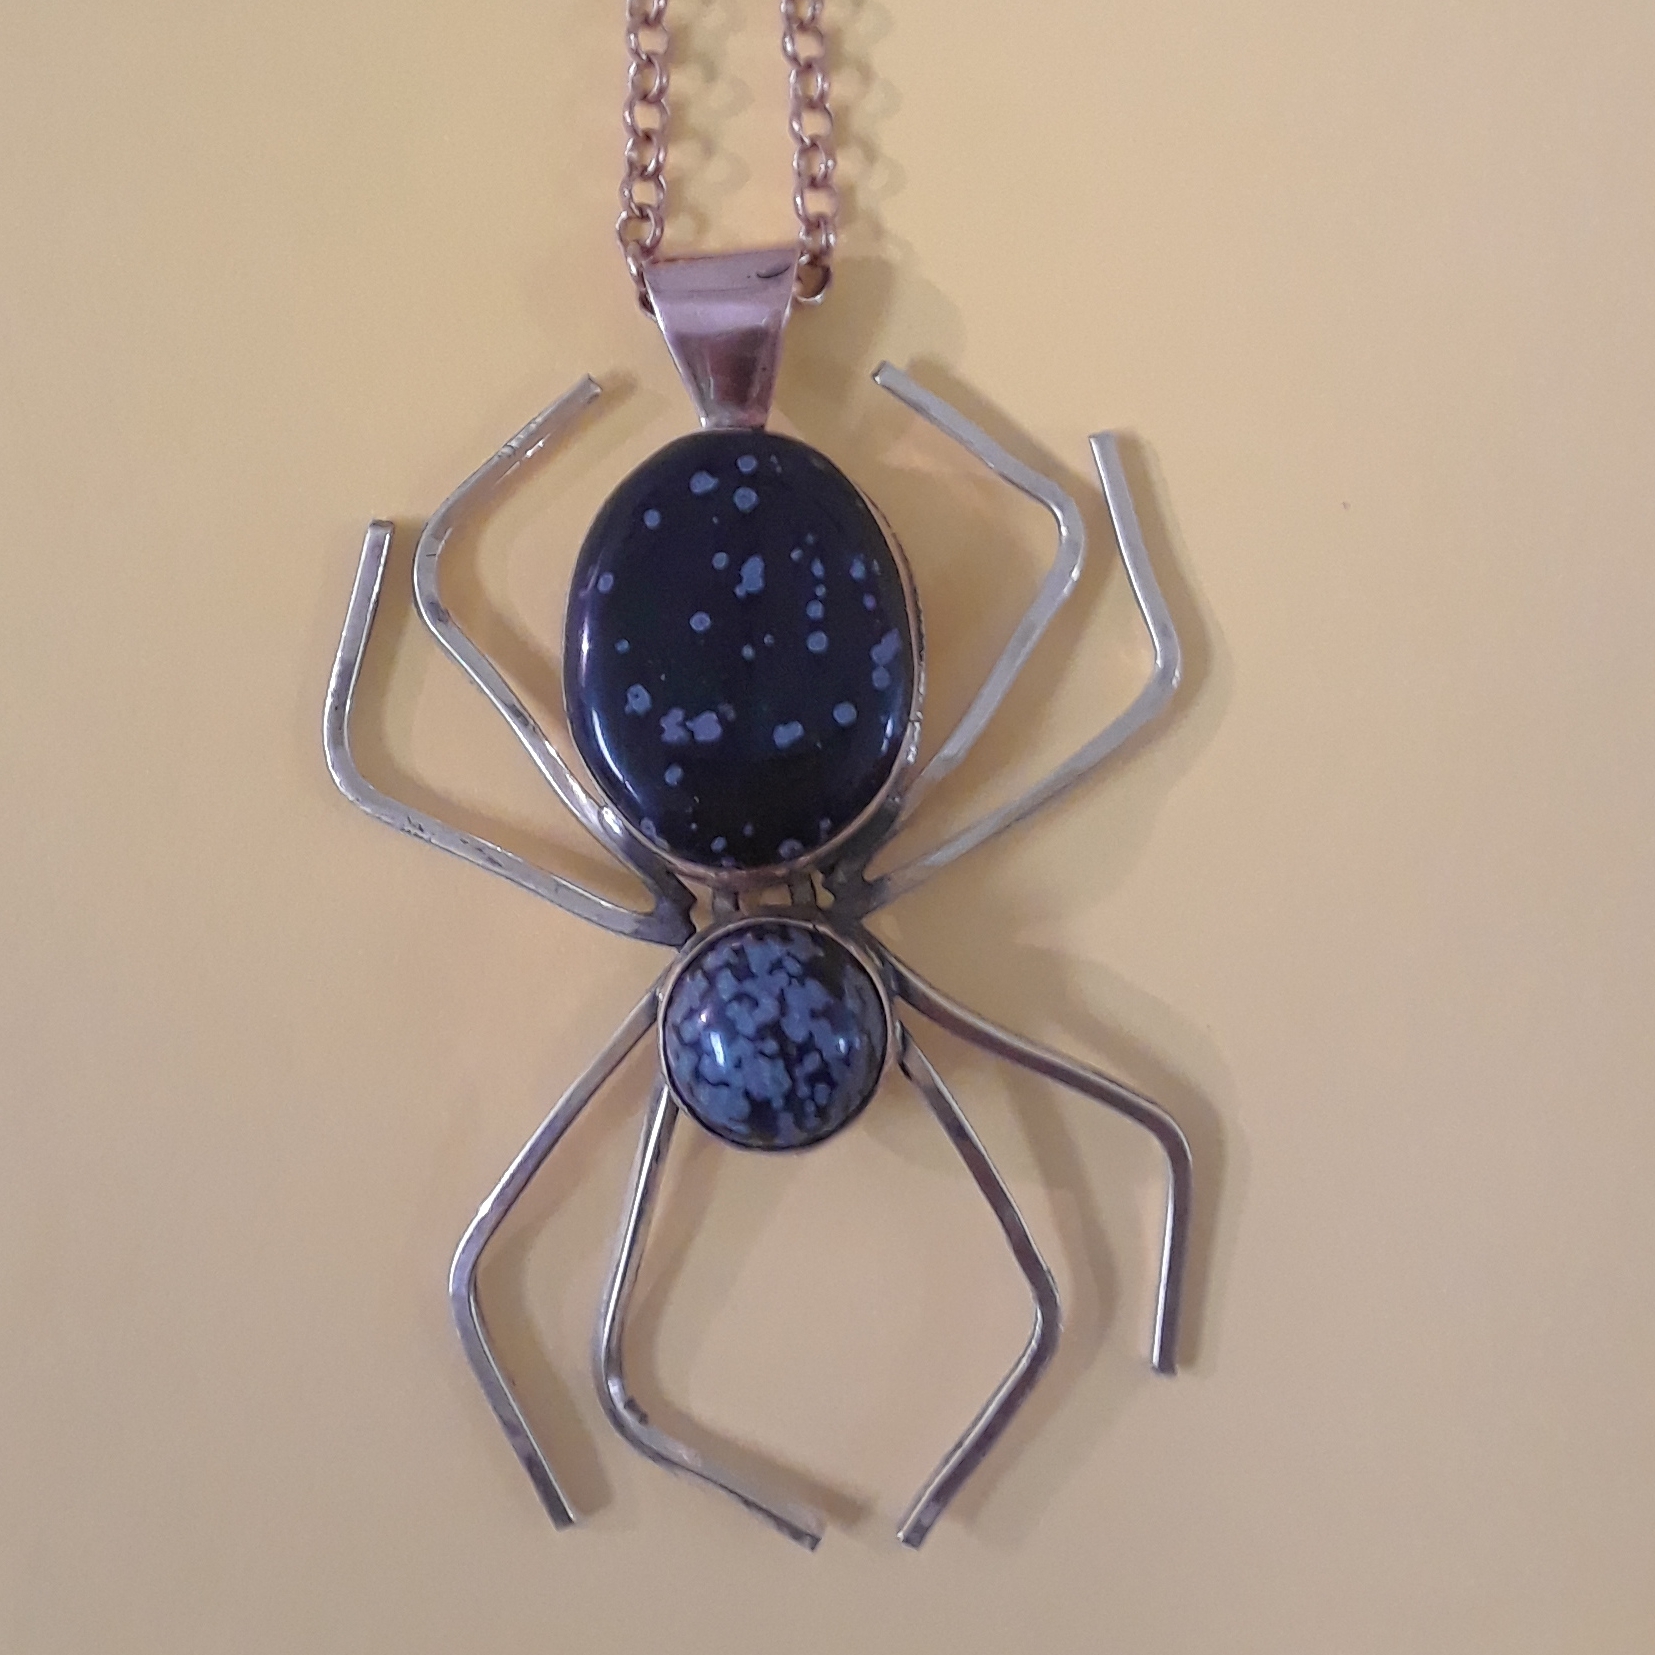 Spider Pendant